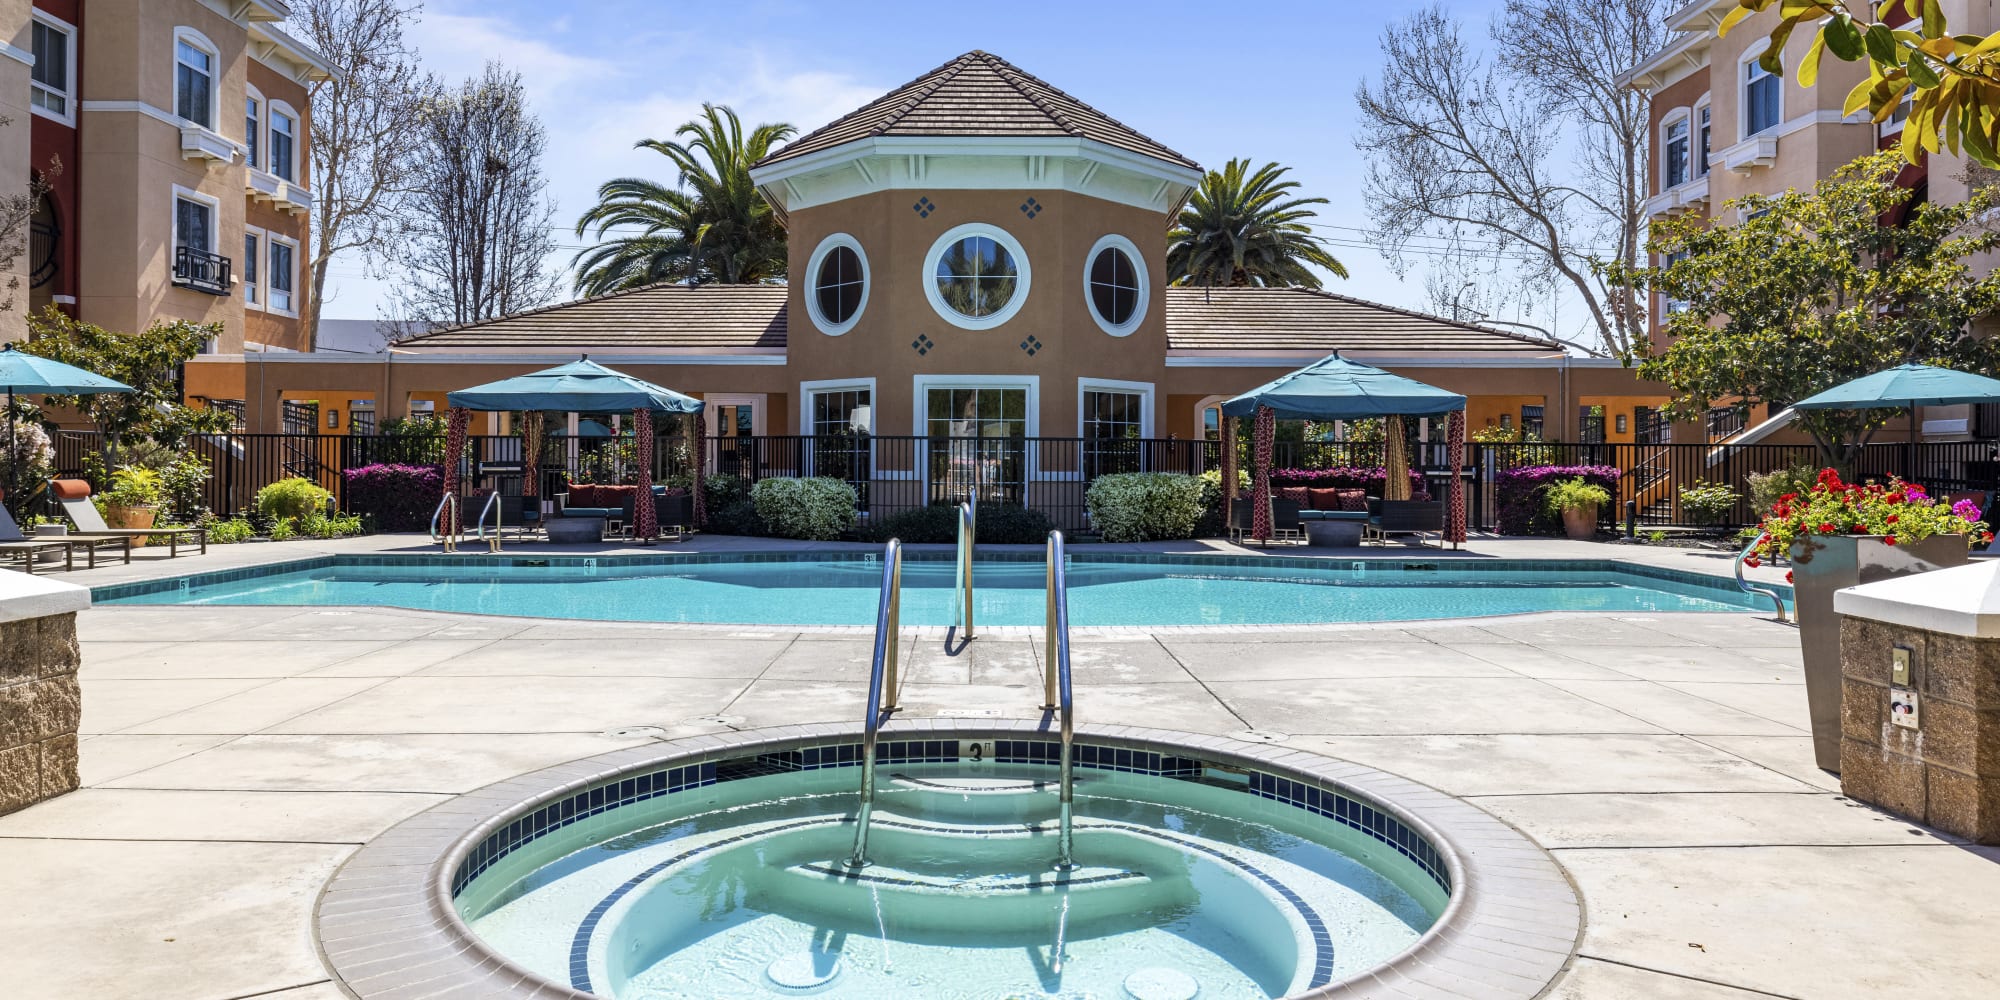 Hot tun near pool at at Villa Del Sol in Sunnyvale, CA